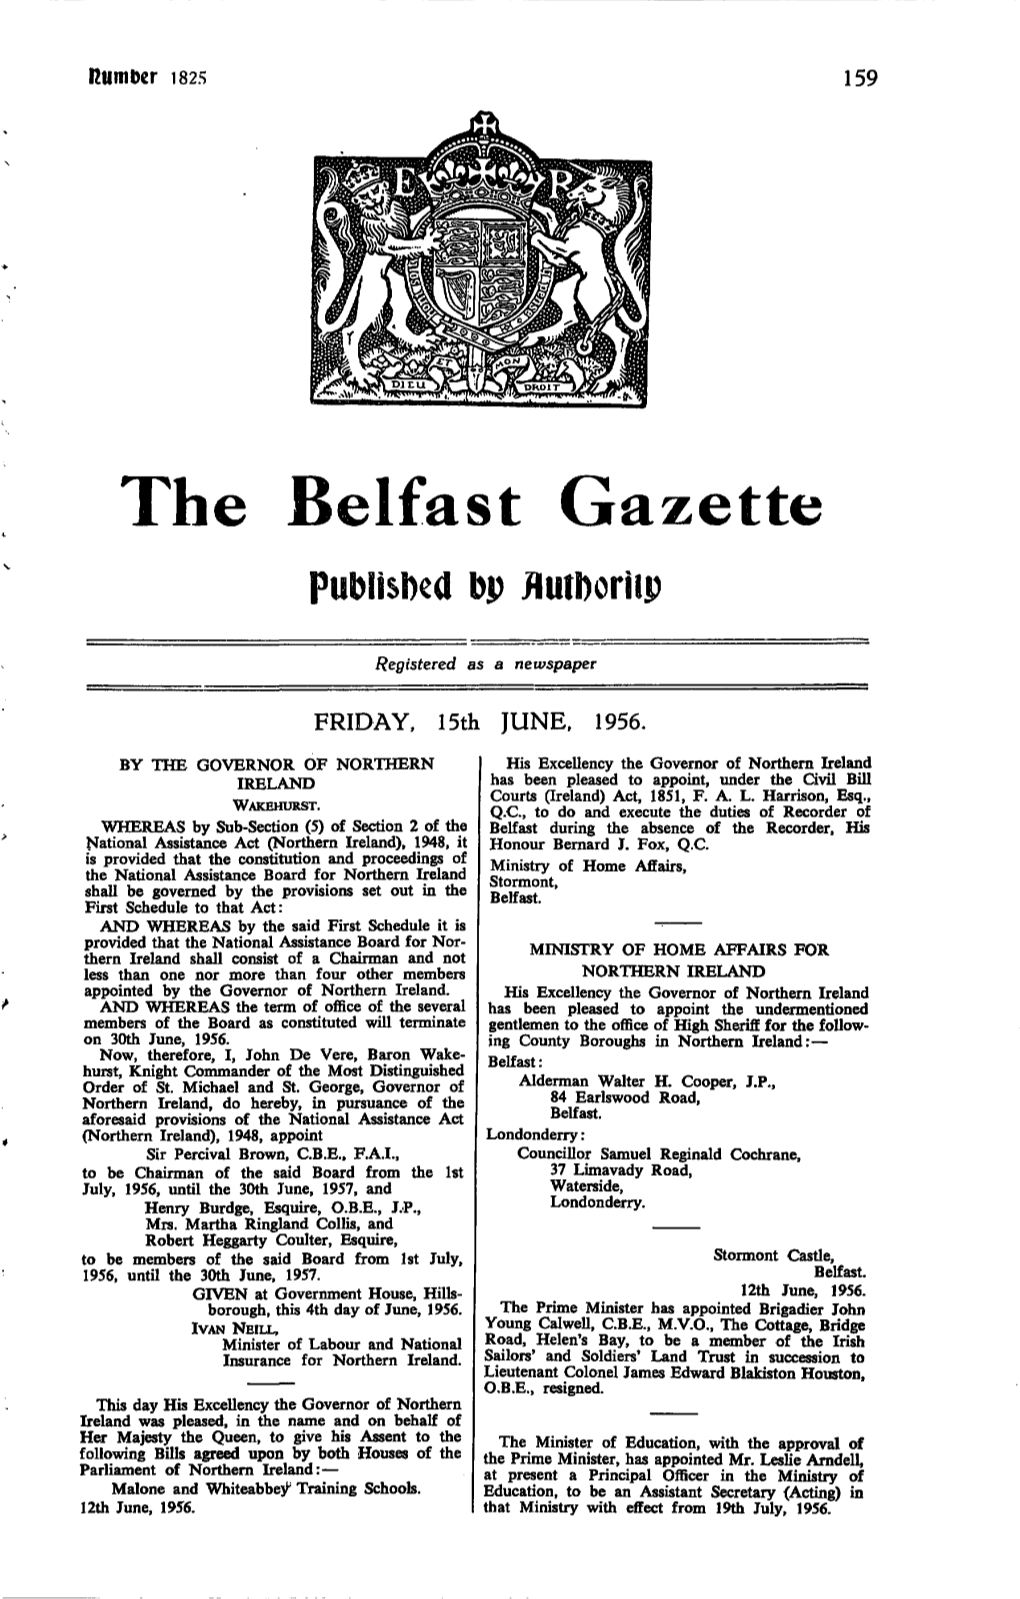 The Belfast Gazette, Issue 1825